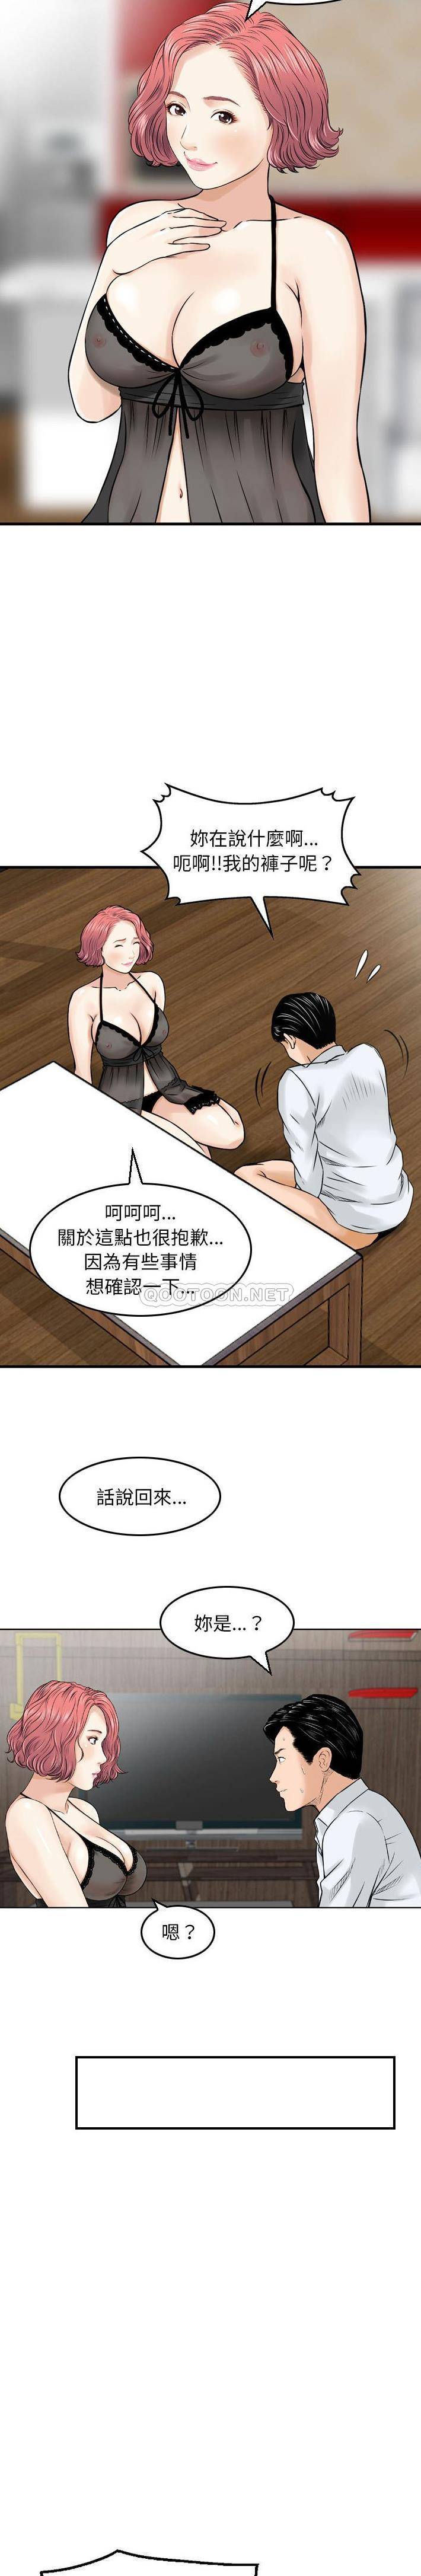 韩国污漫画 金錢的魅力 第6话 4